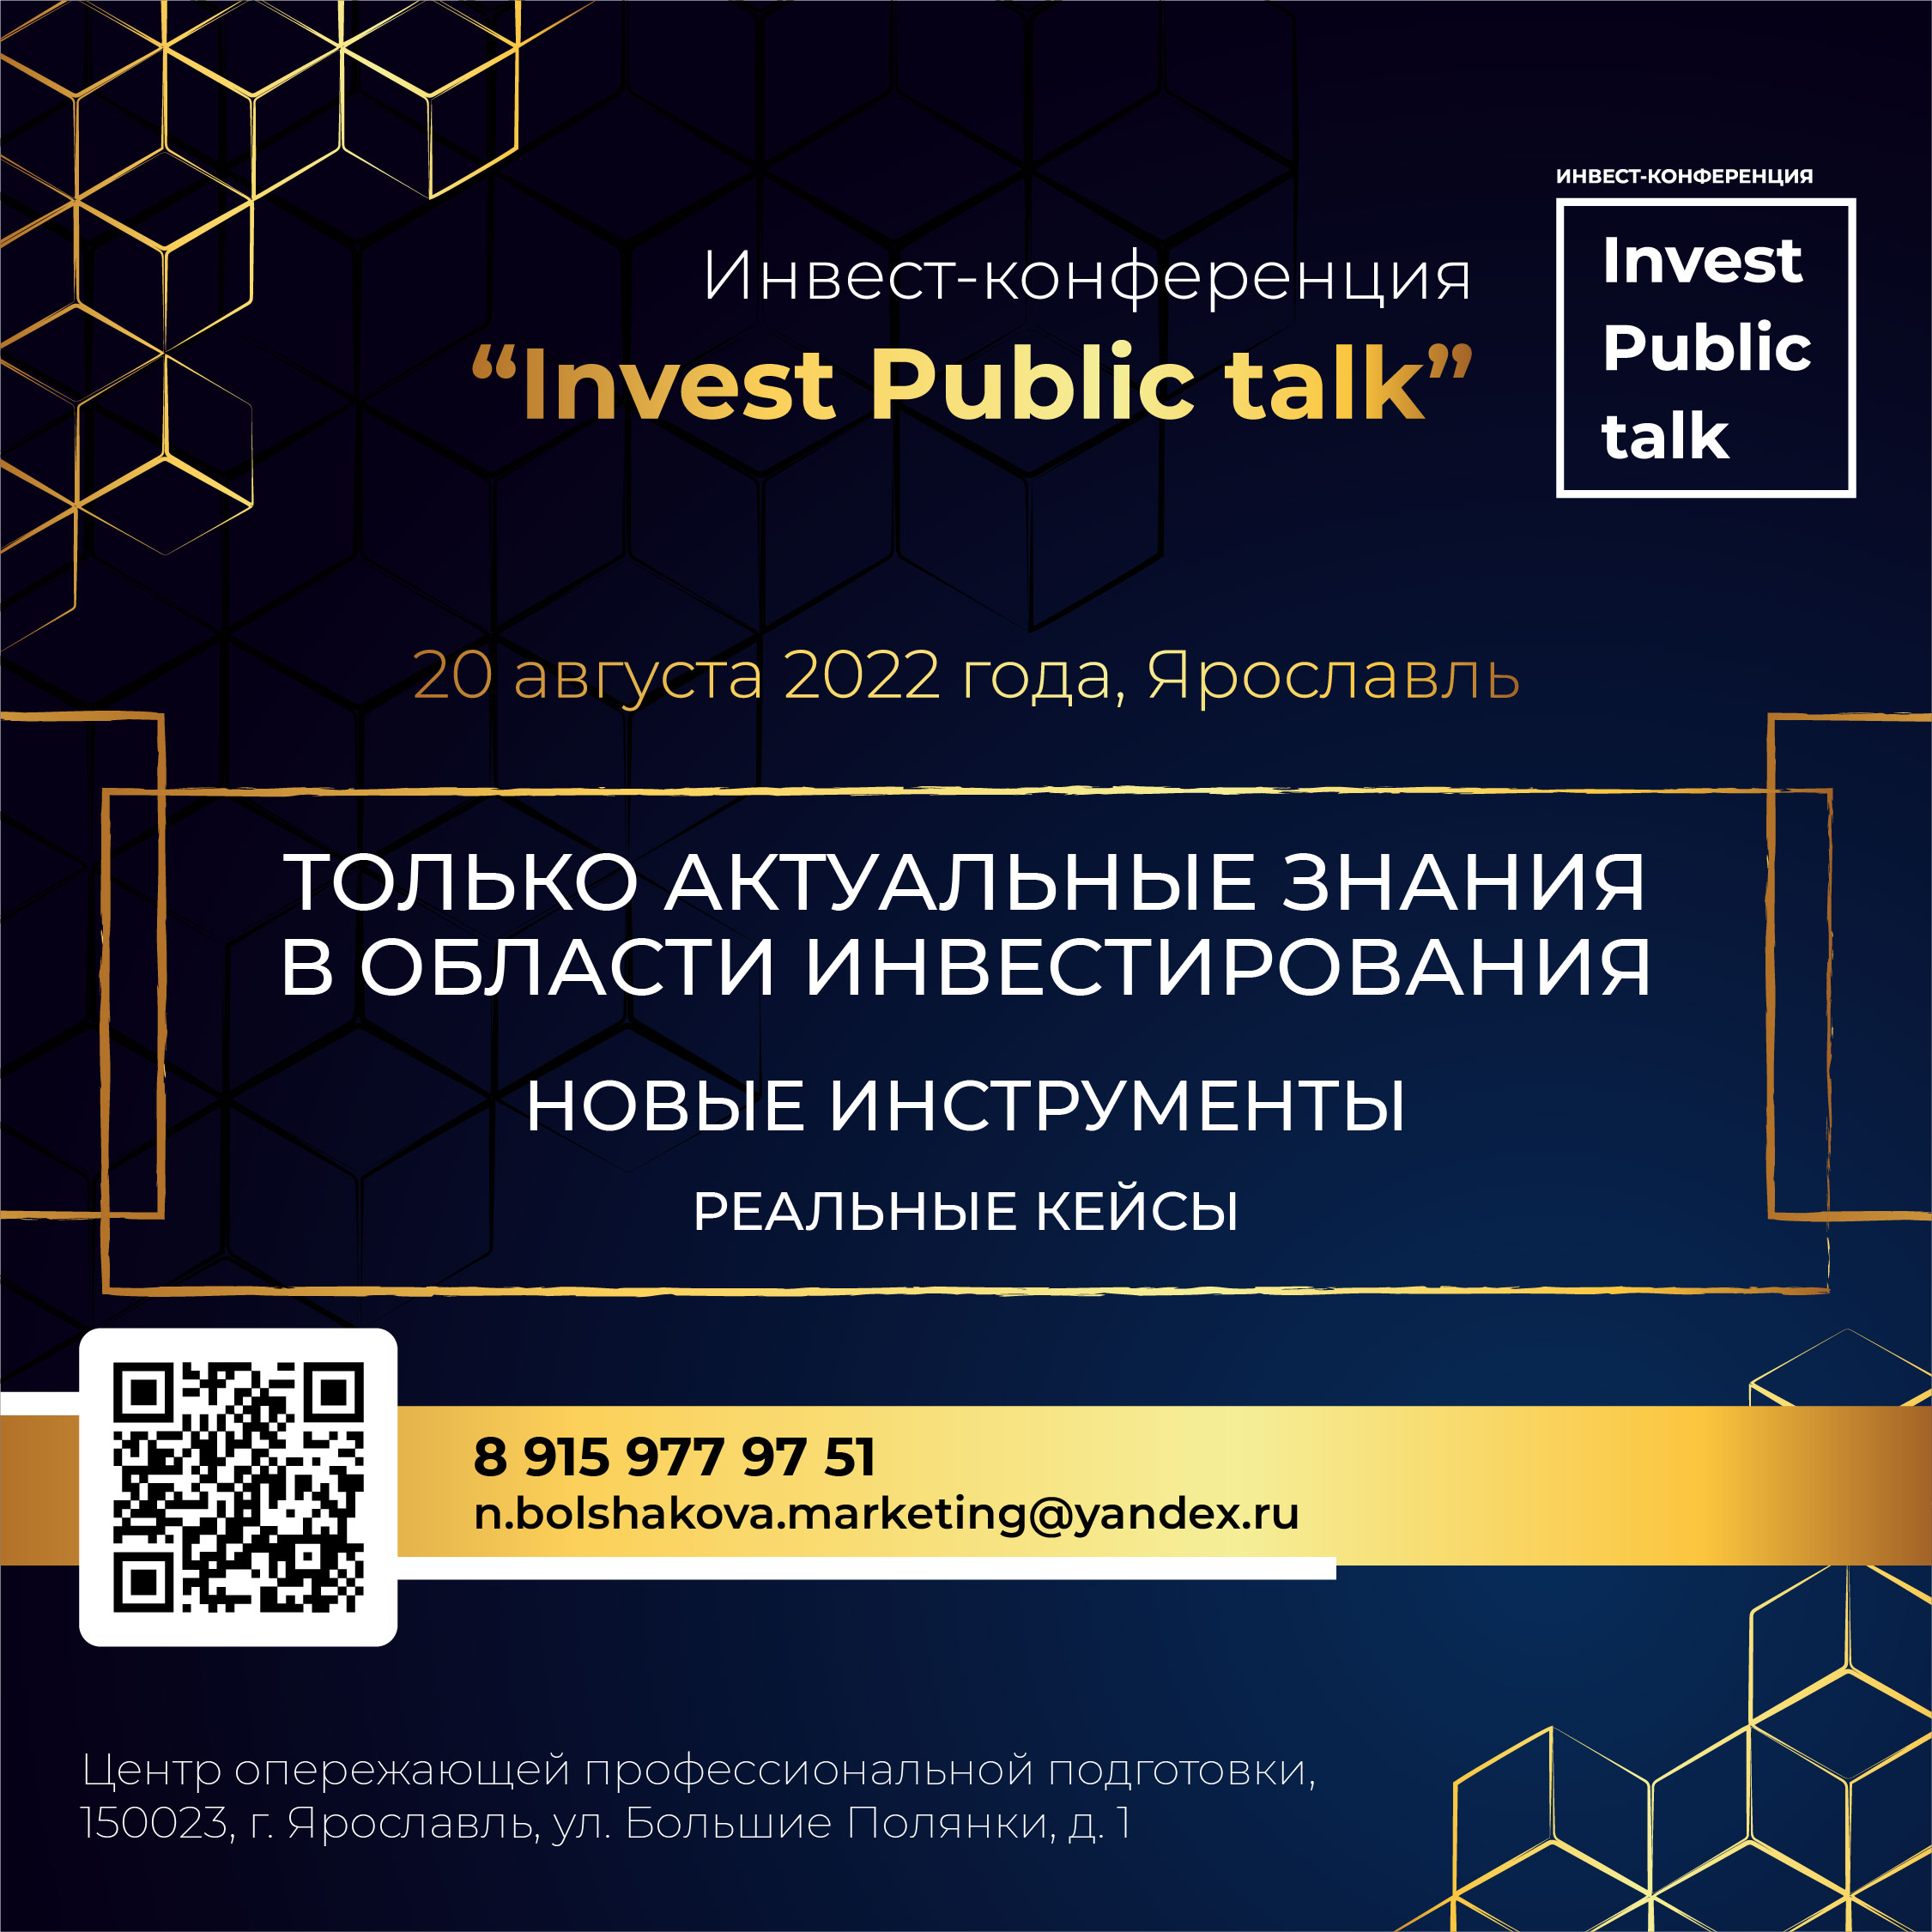 20 августа в Ярославле пройдет инвестиционная конференция Invest Public talk